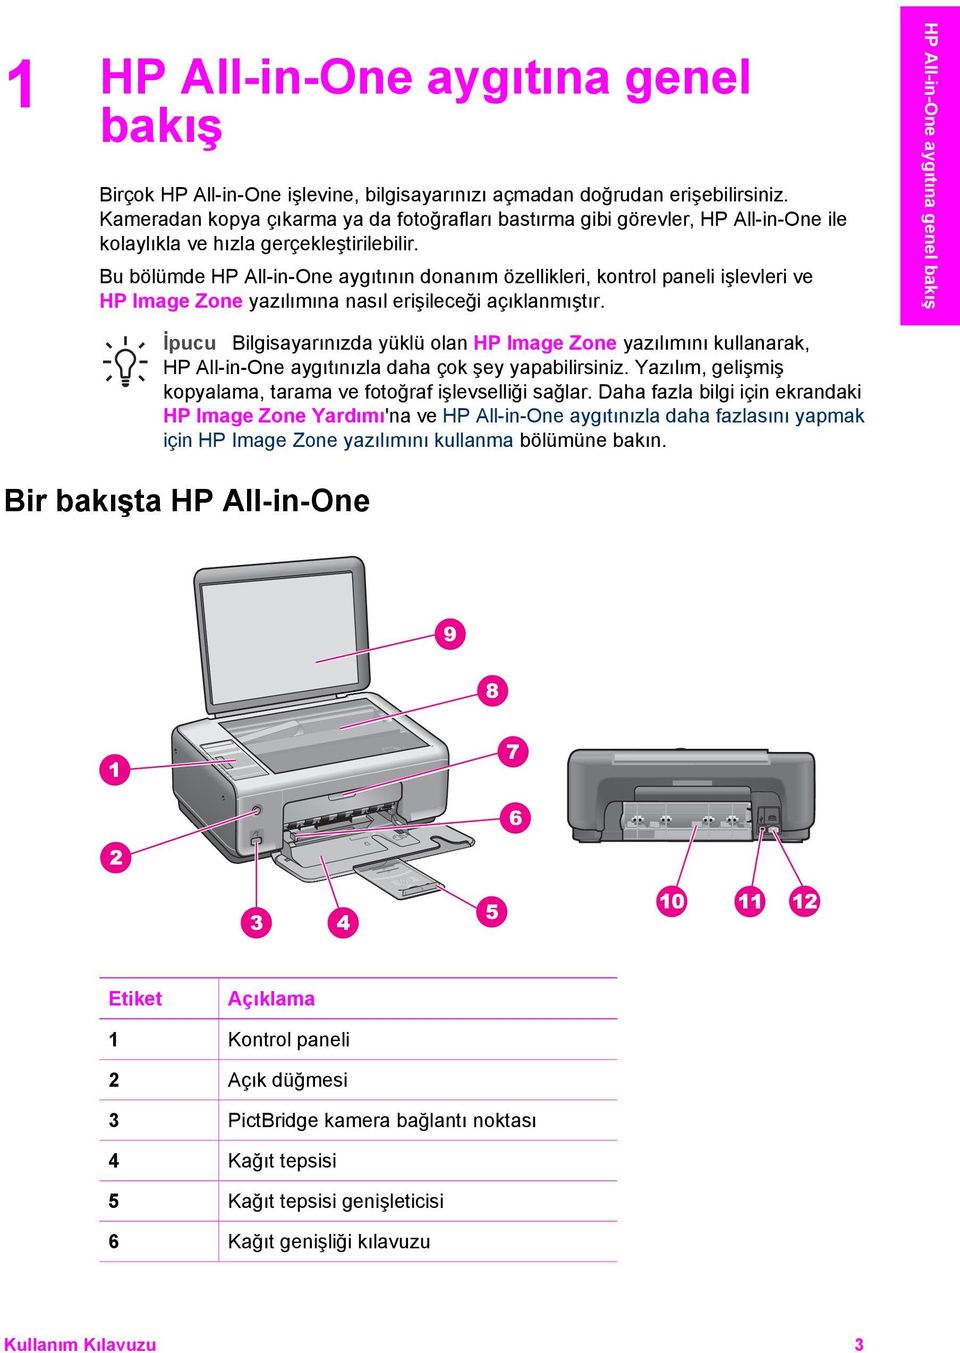 Bu bölümde HP All-in-One aygıtının donanım özellikleri, kontrol paneli işlevleri ve HP Image Zone yazılımına nasıl erişileceği açıklanmıştır.